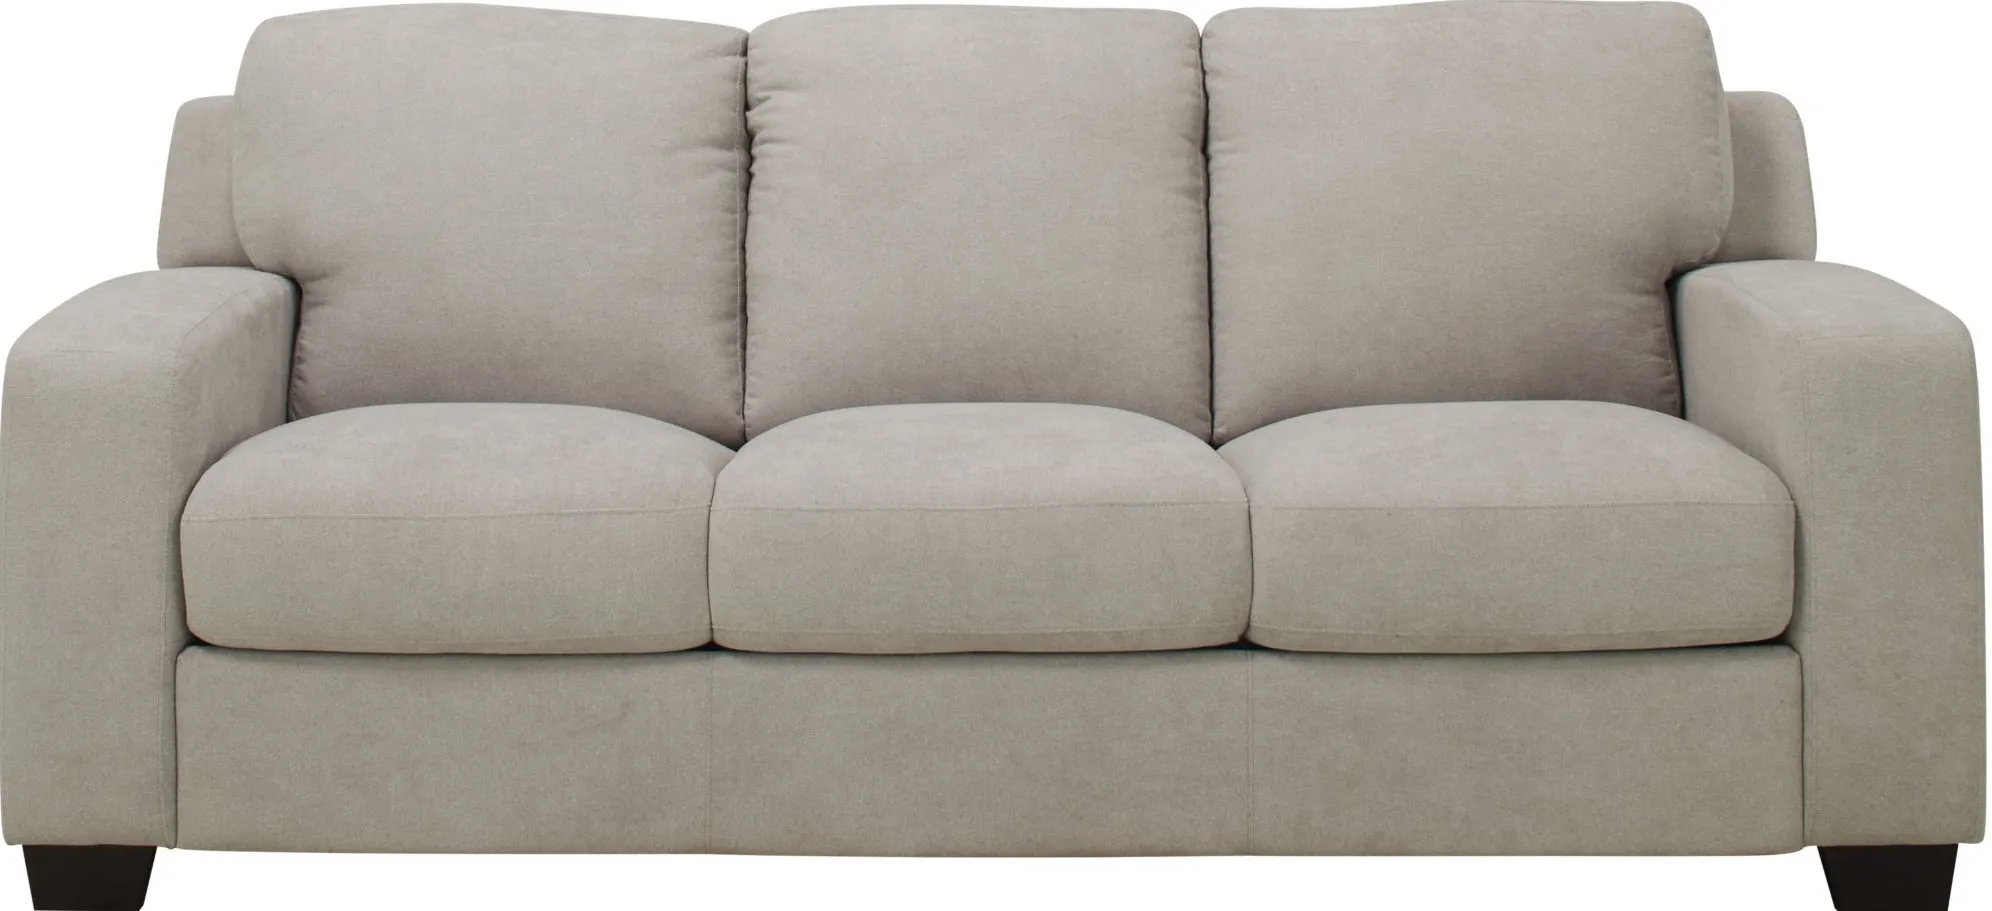 Bari Queen Sleeper Sofa in Gray by Bellanest